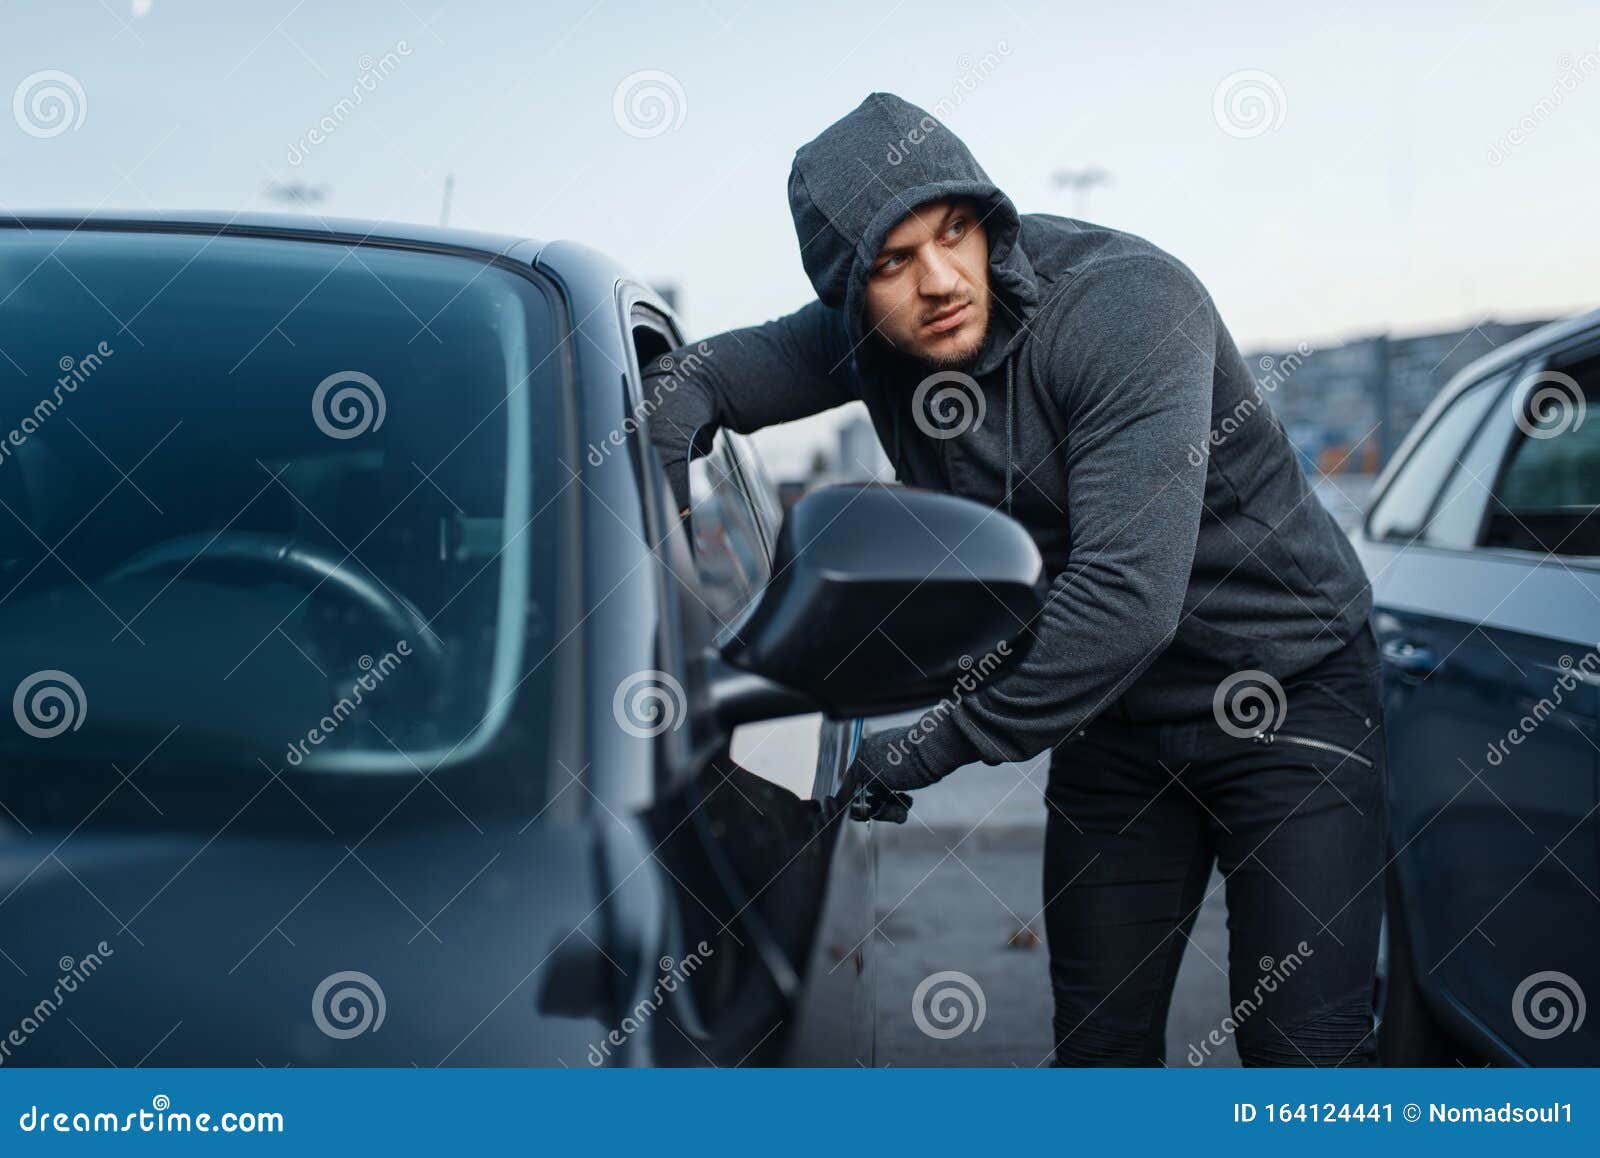 car thief 6